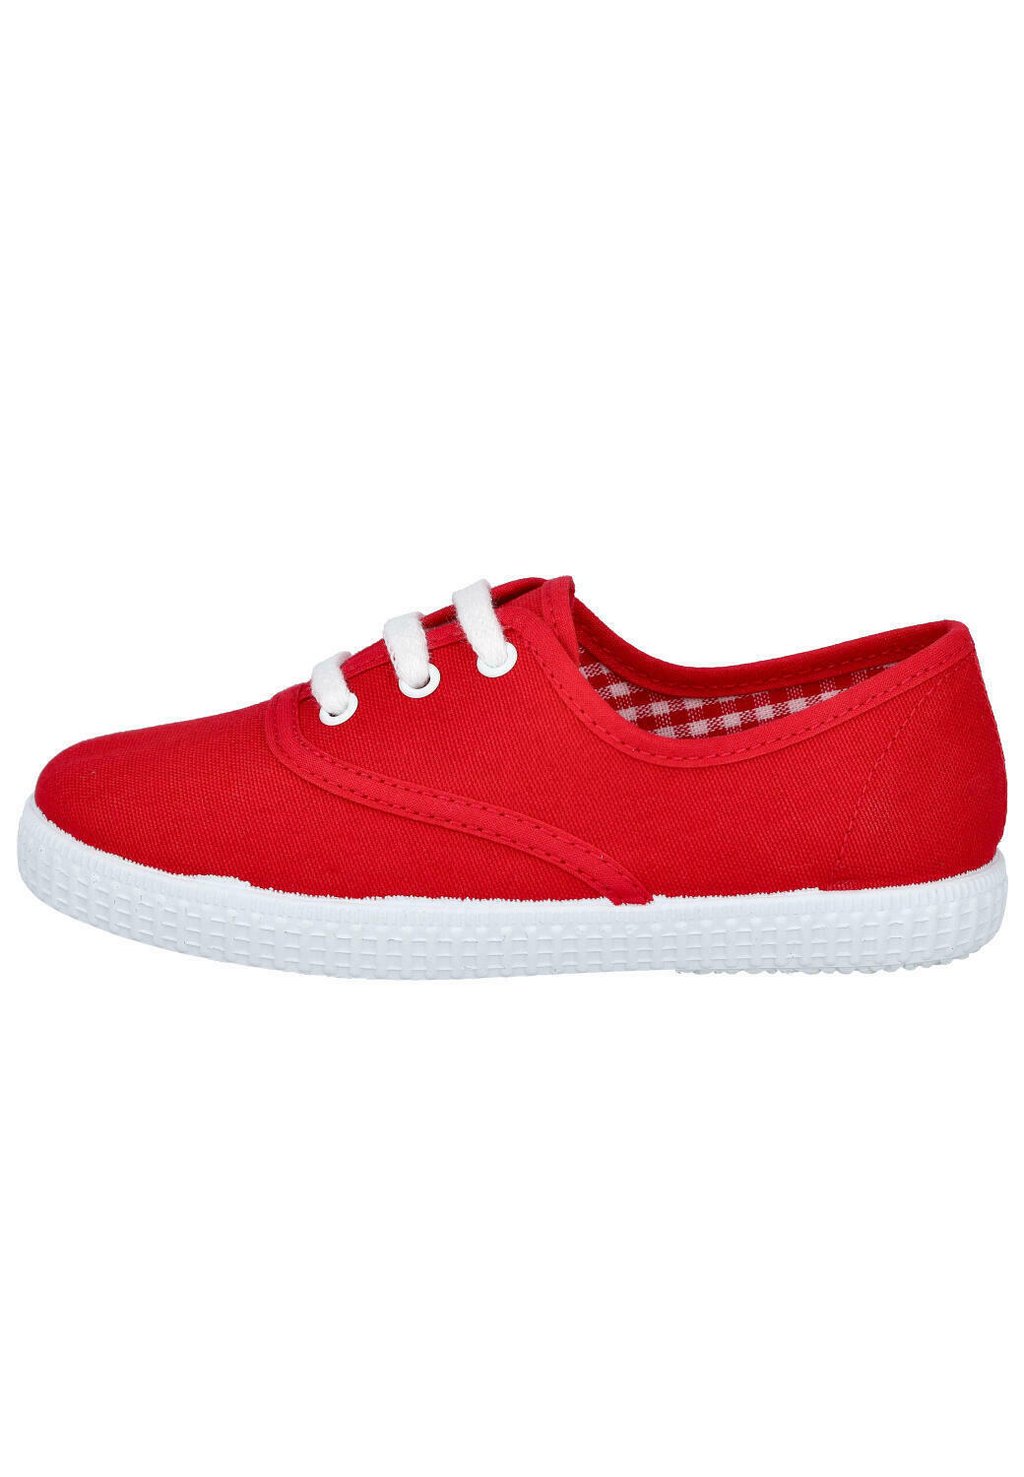 Детская обувь CORDONES UNISEX Batilas, красный